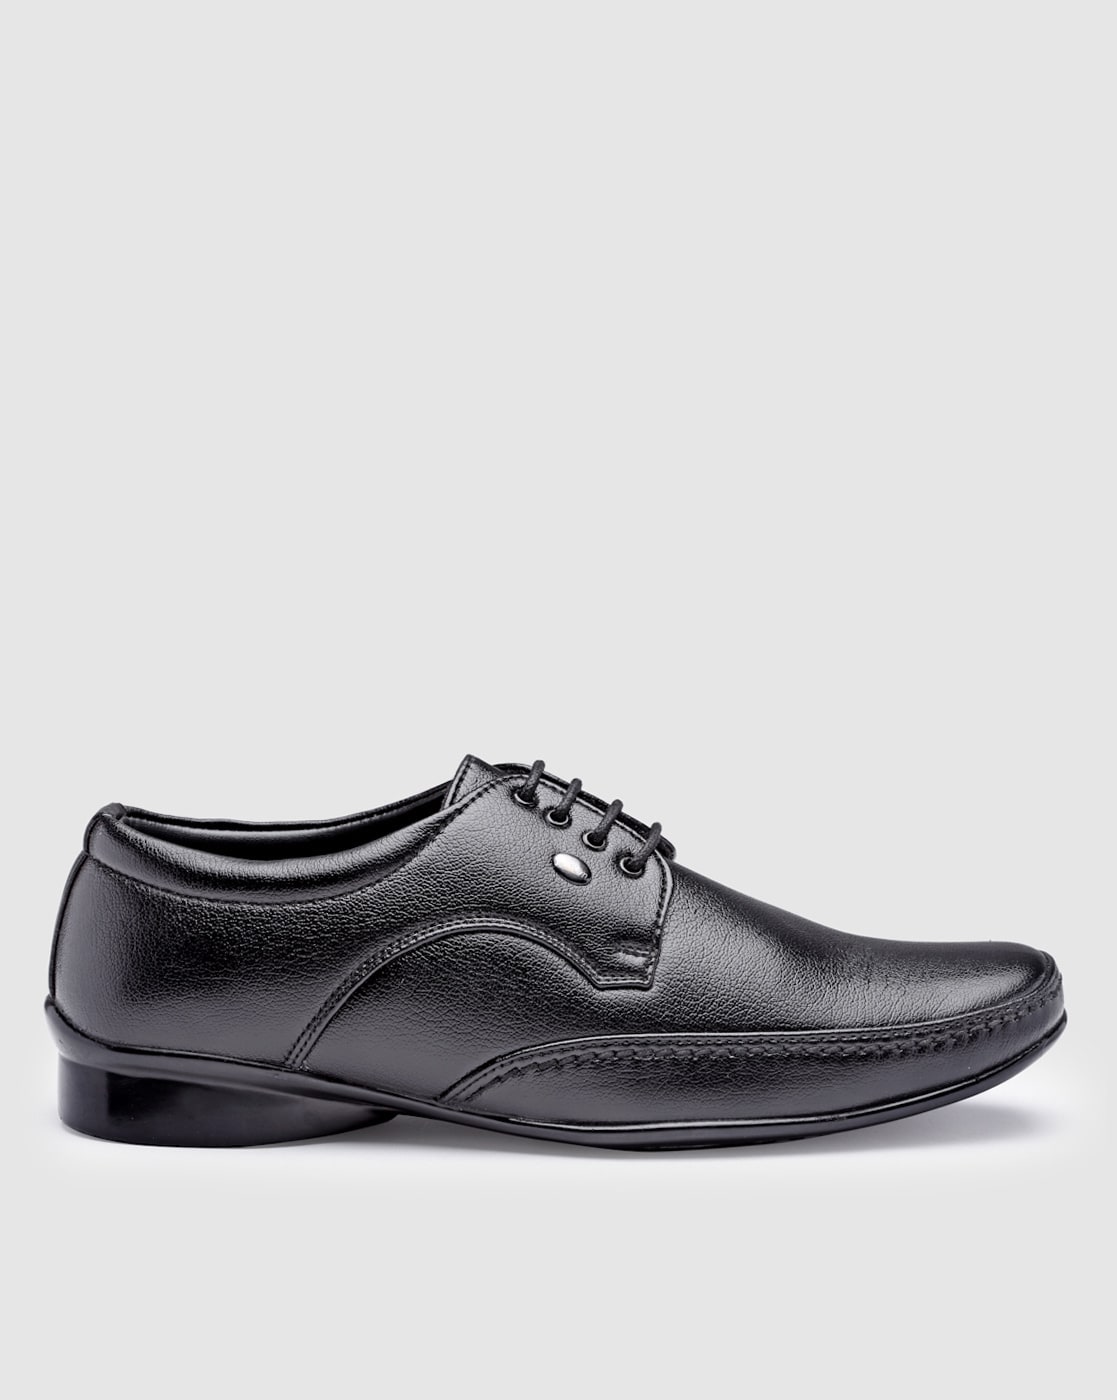 Men's Dress Shoes | SuitShop